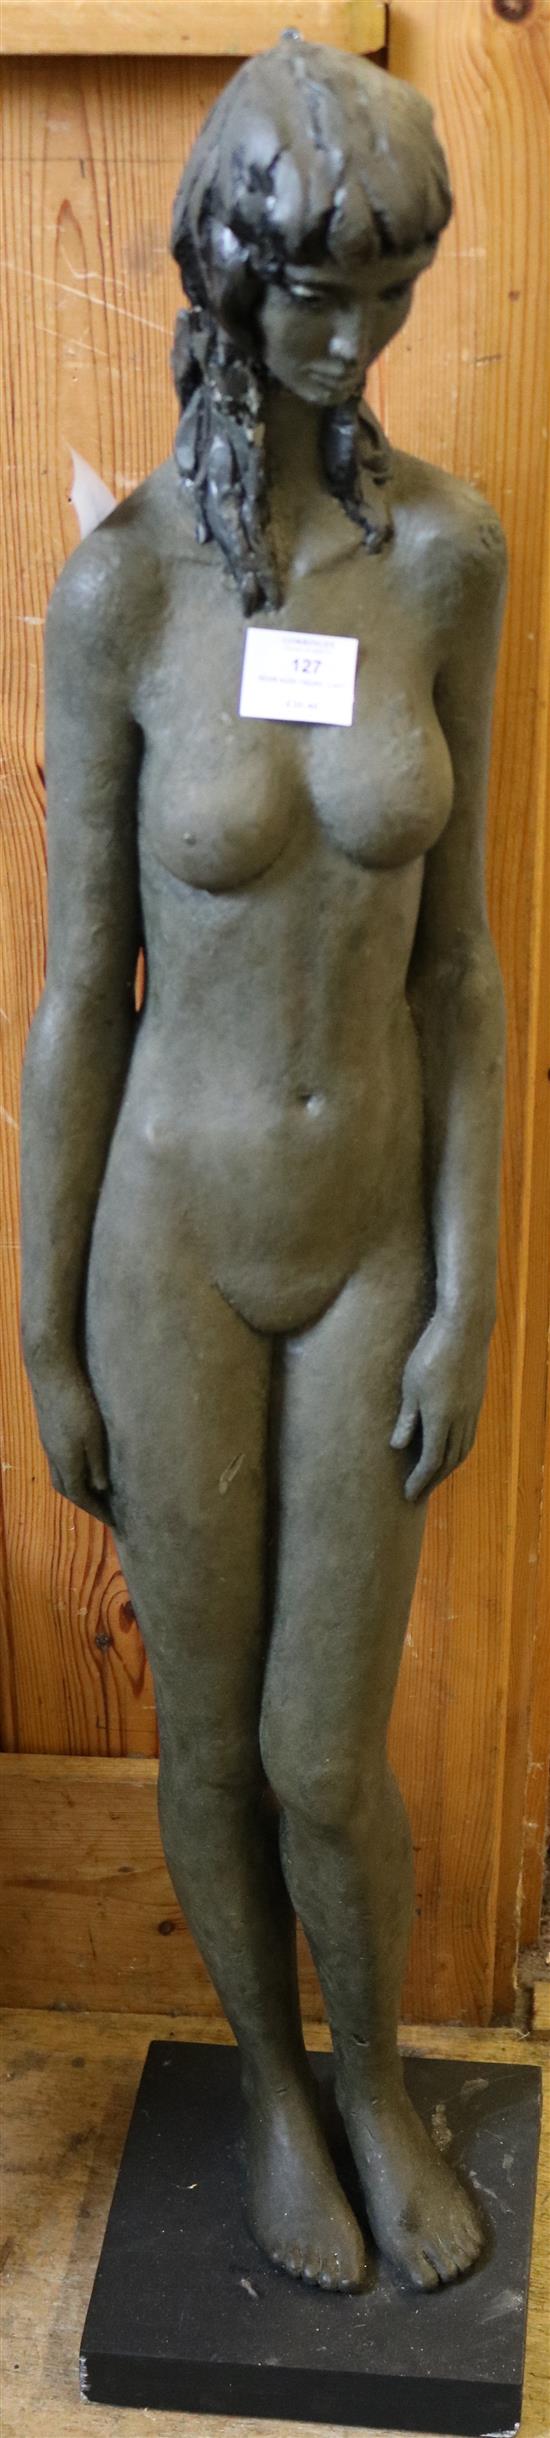 Resin nude figure - Lady